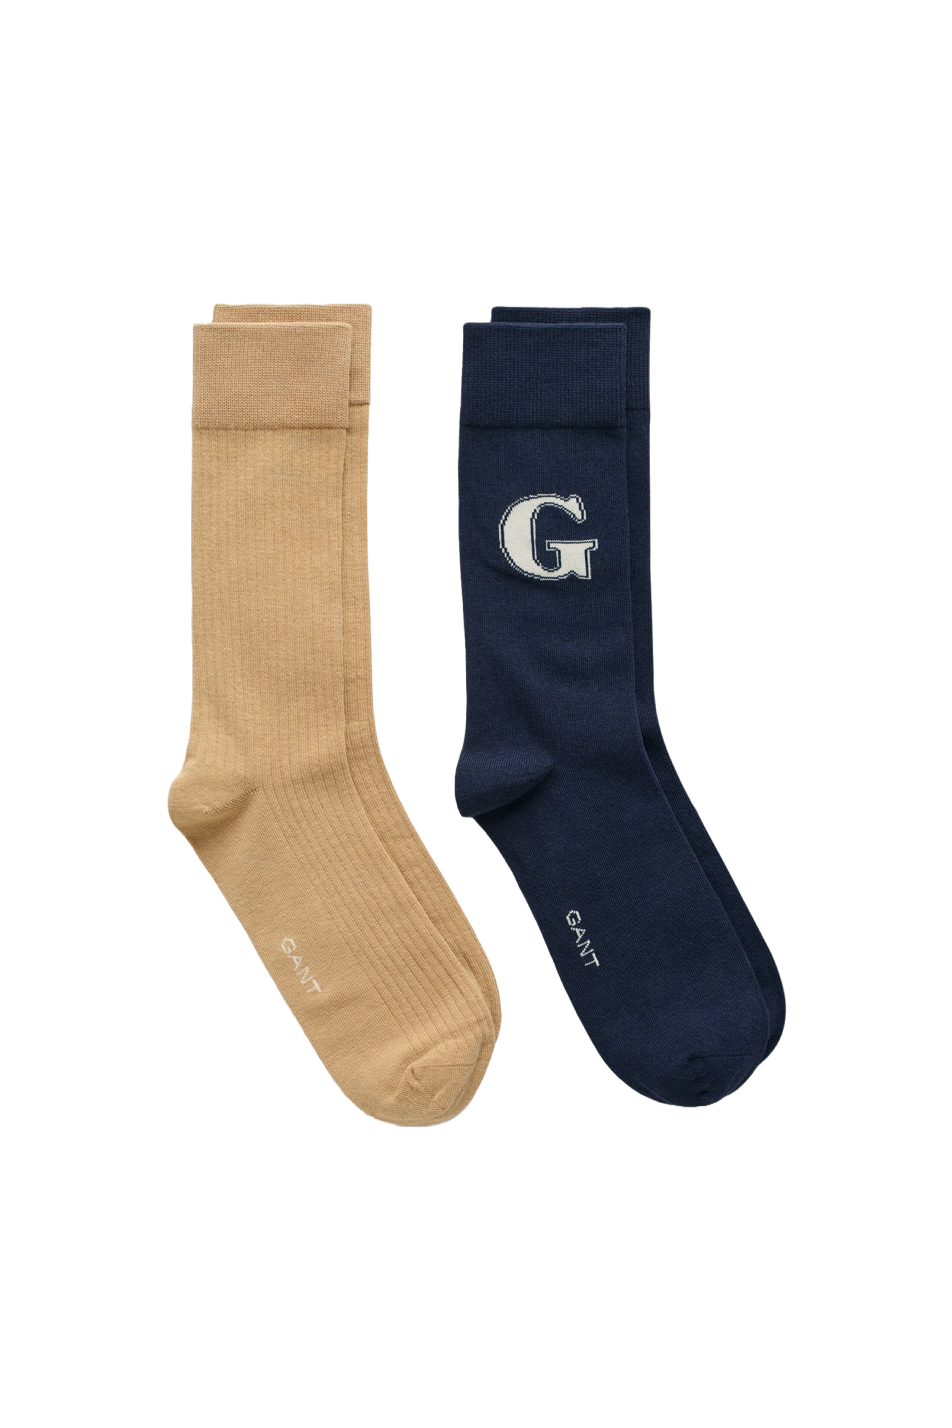 Gant G Socks 2 Pack Gift Box